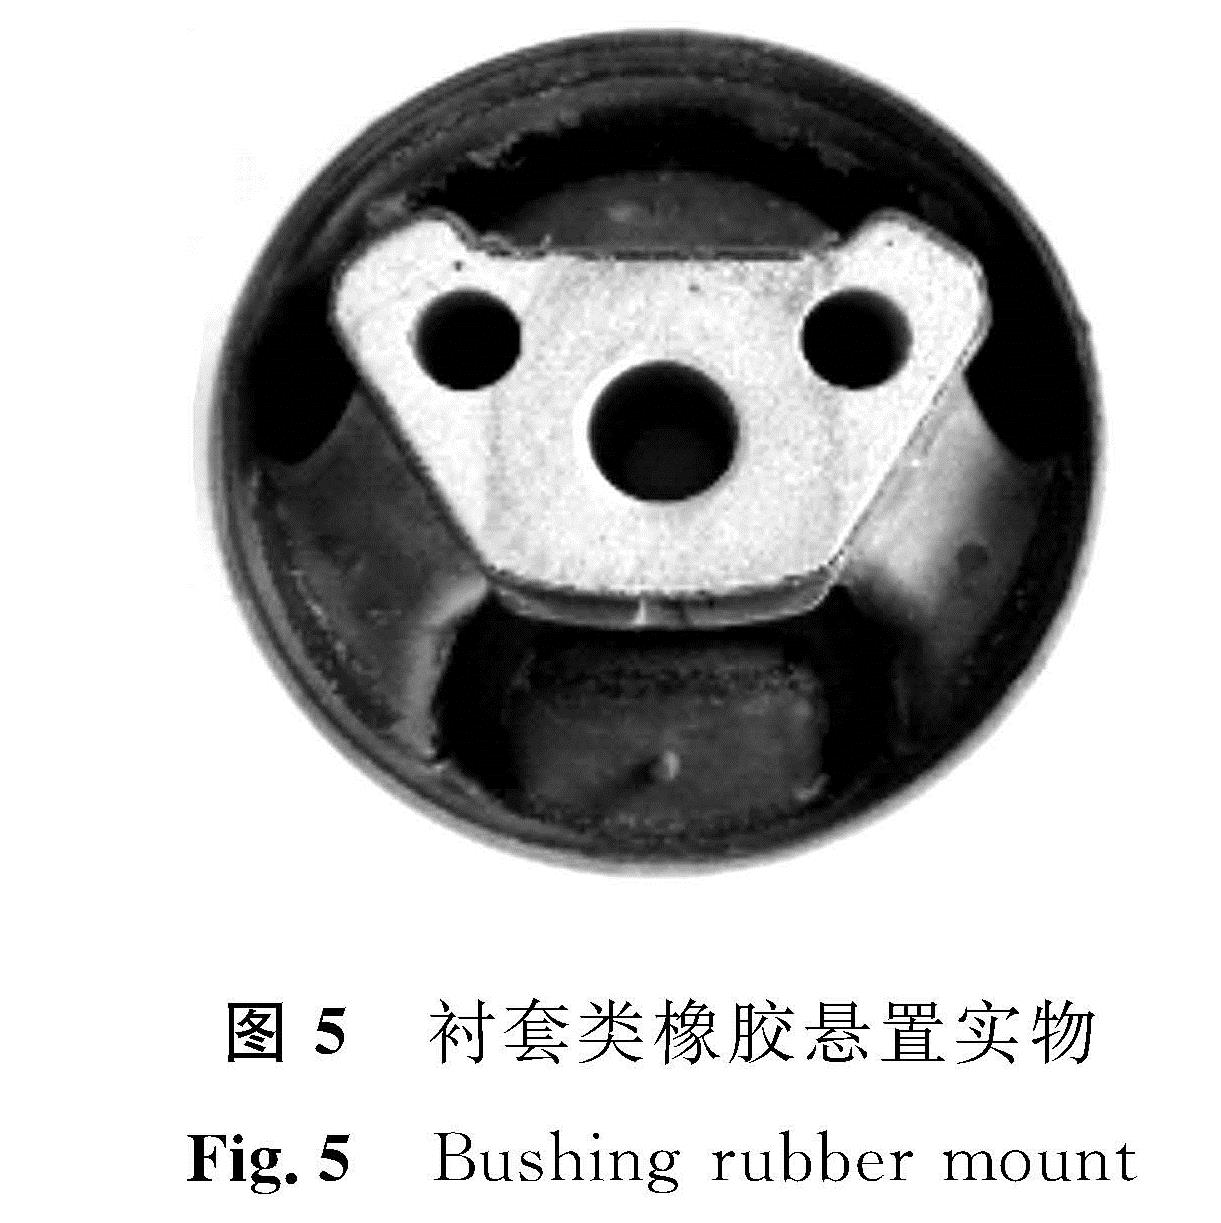 图5 衬套类橡胶悬置实物<br/>Fig.5 Bushing rubber mount